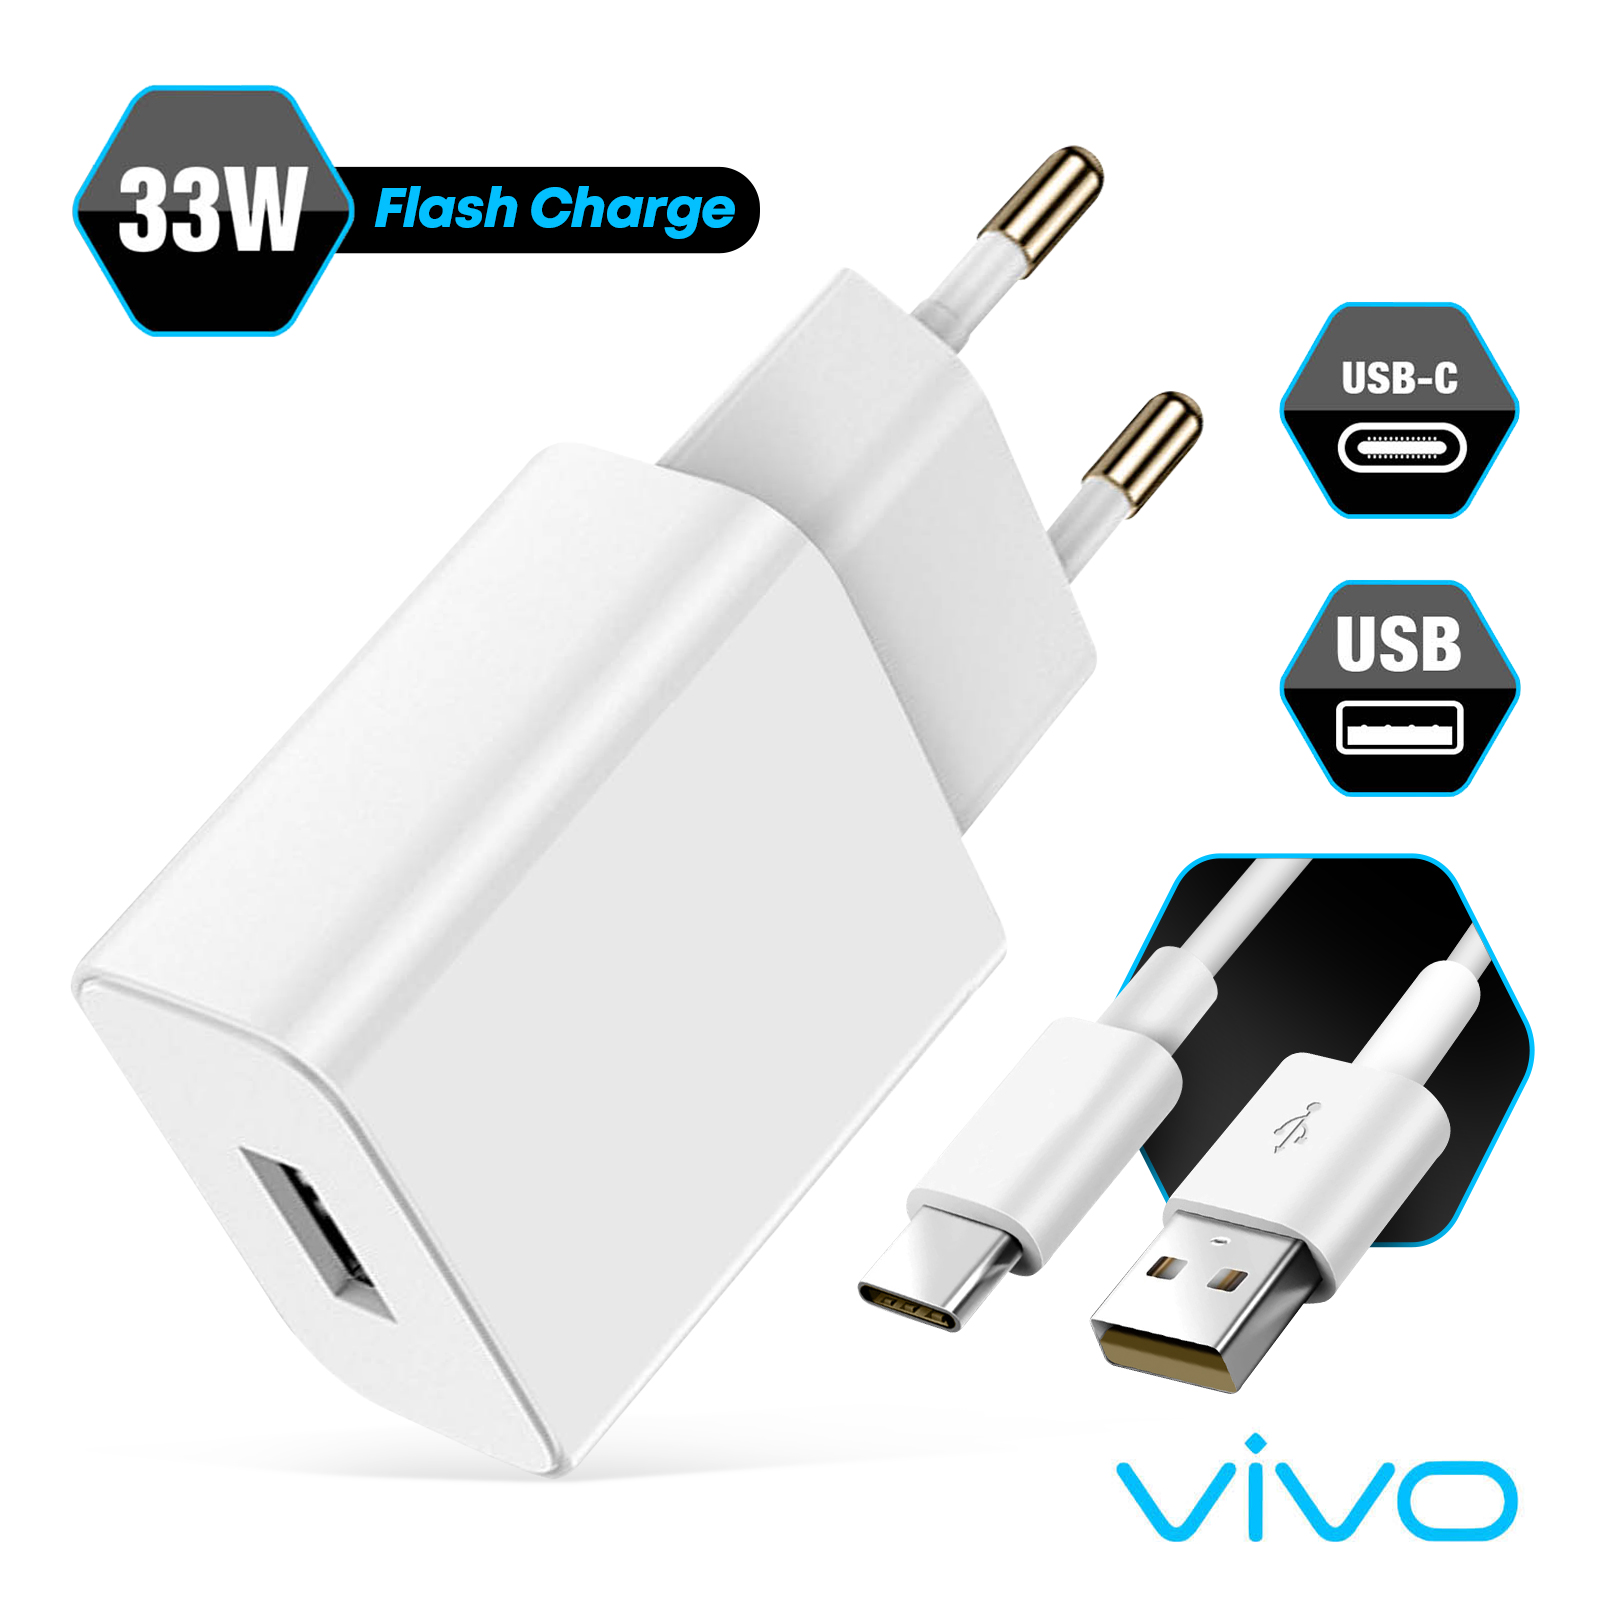 Chargeur pour téléphone mobile Vivo Chargeur secteur Vivo 33W + Câble USB A/USB  C - 5469192